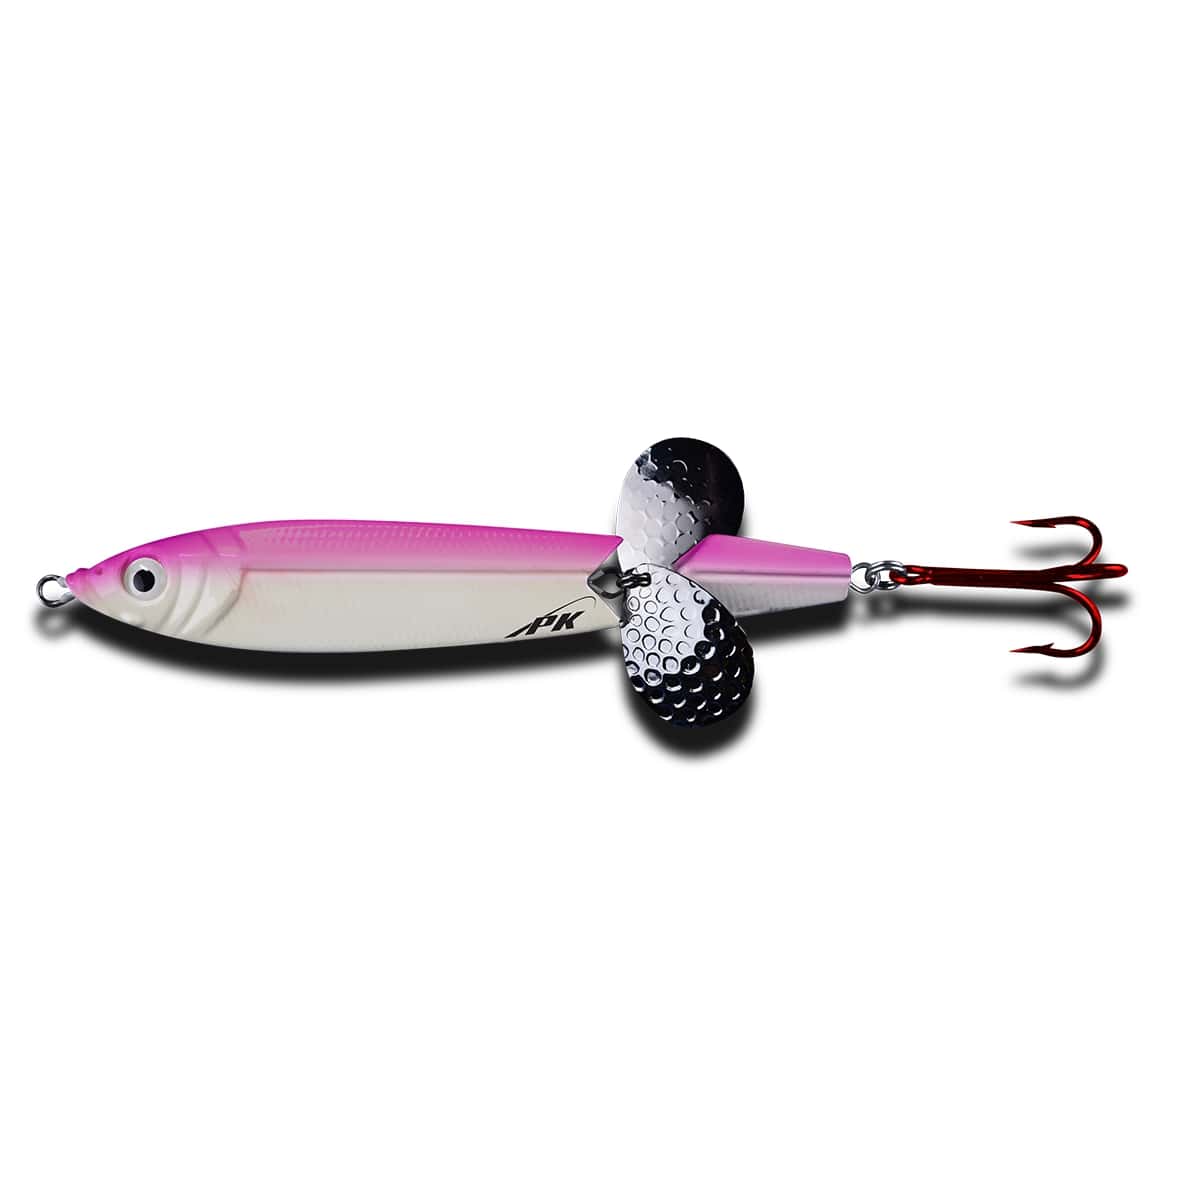 PK Panic Versatile Fishing Spoon - Pink Back Glow / 1/8 oz